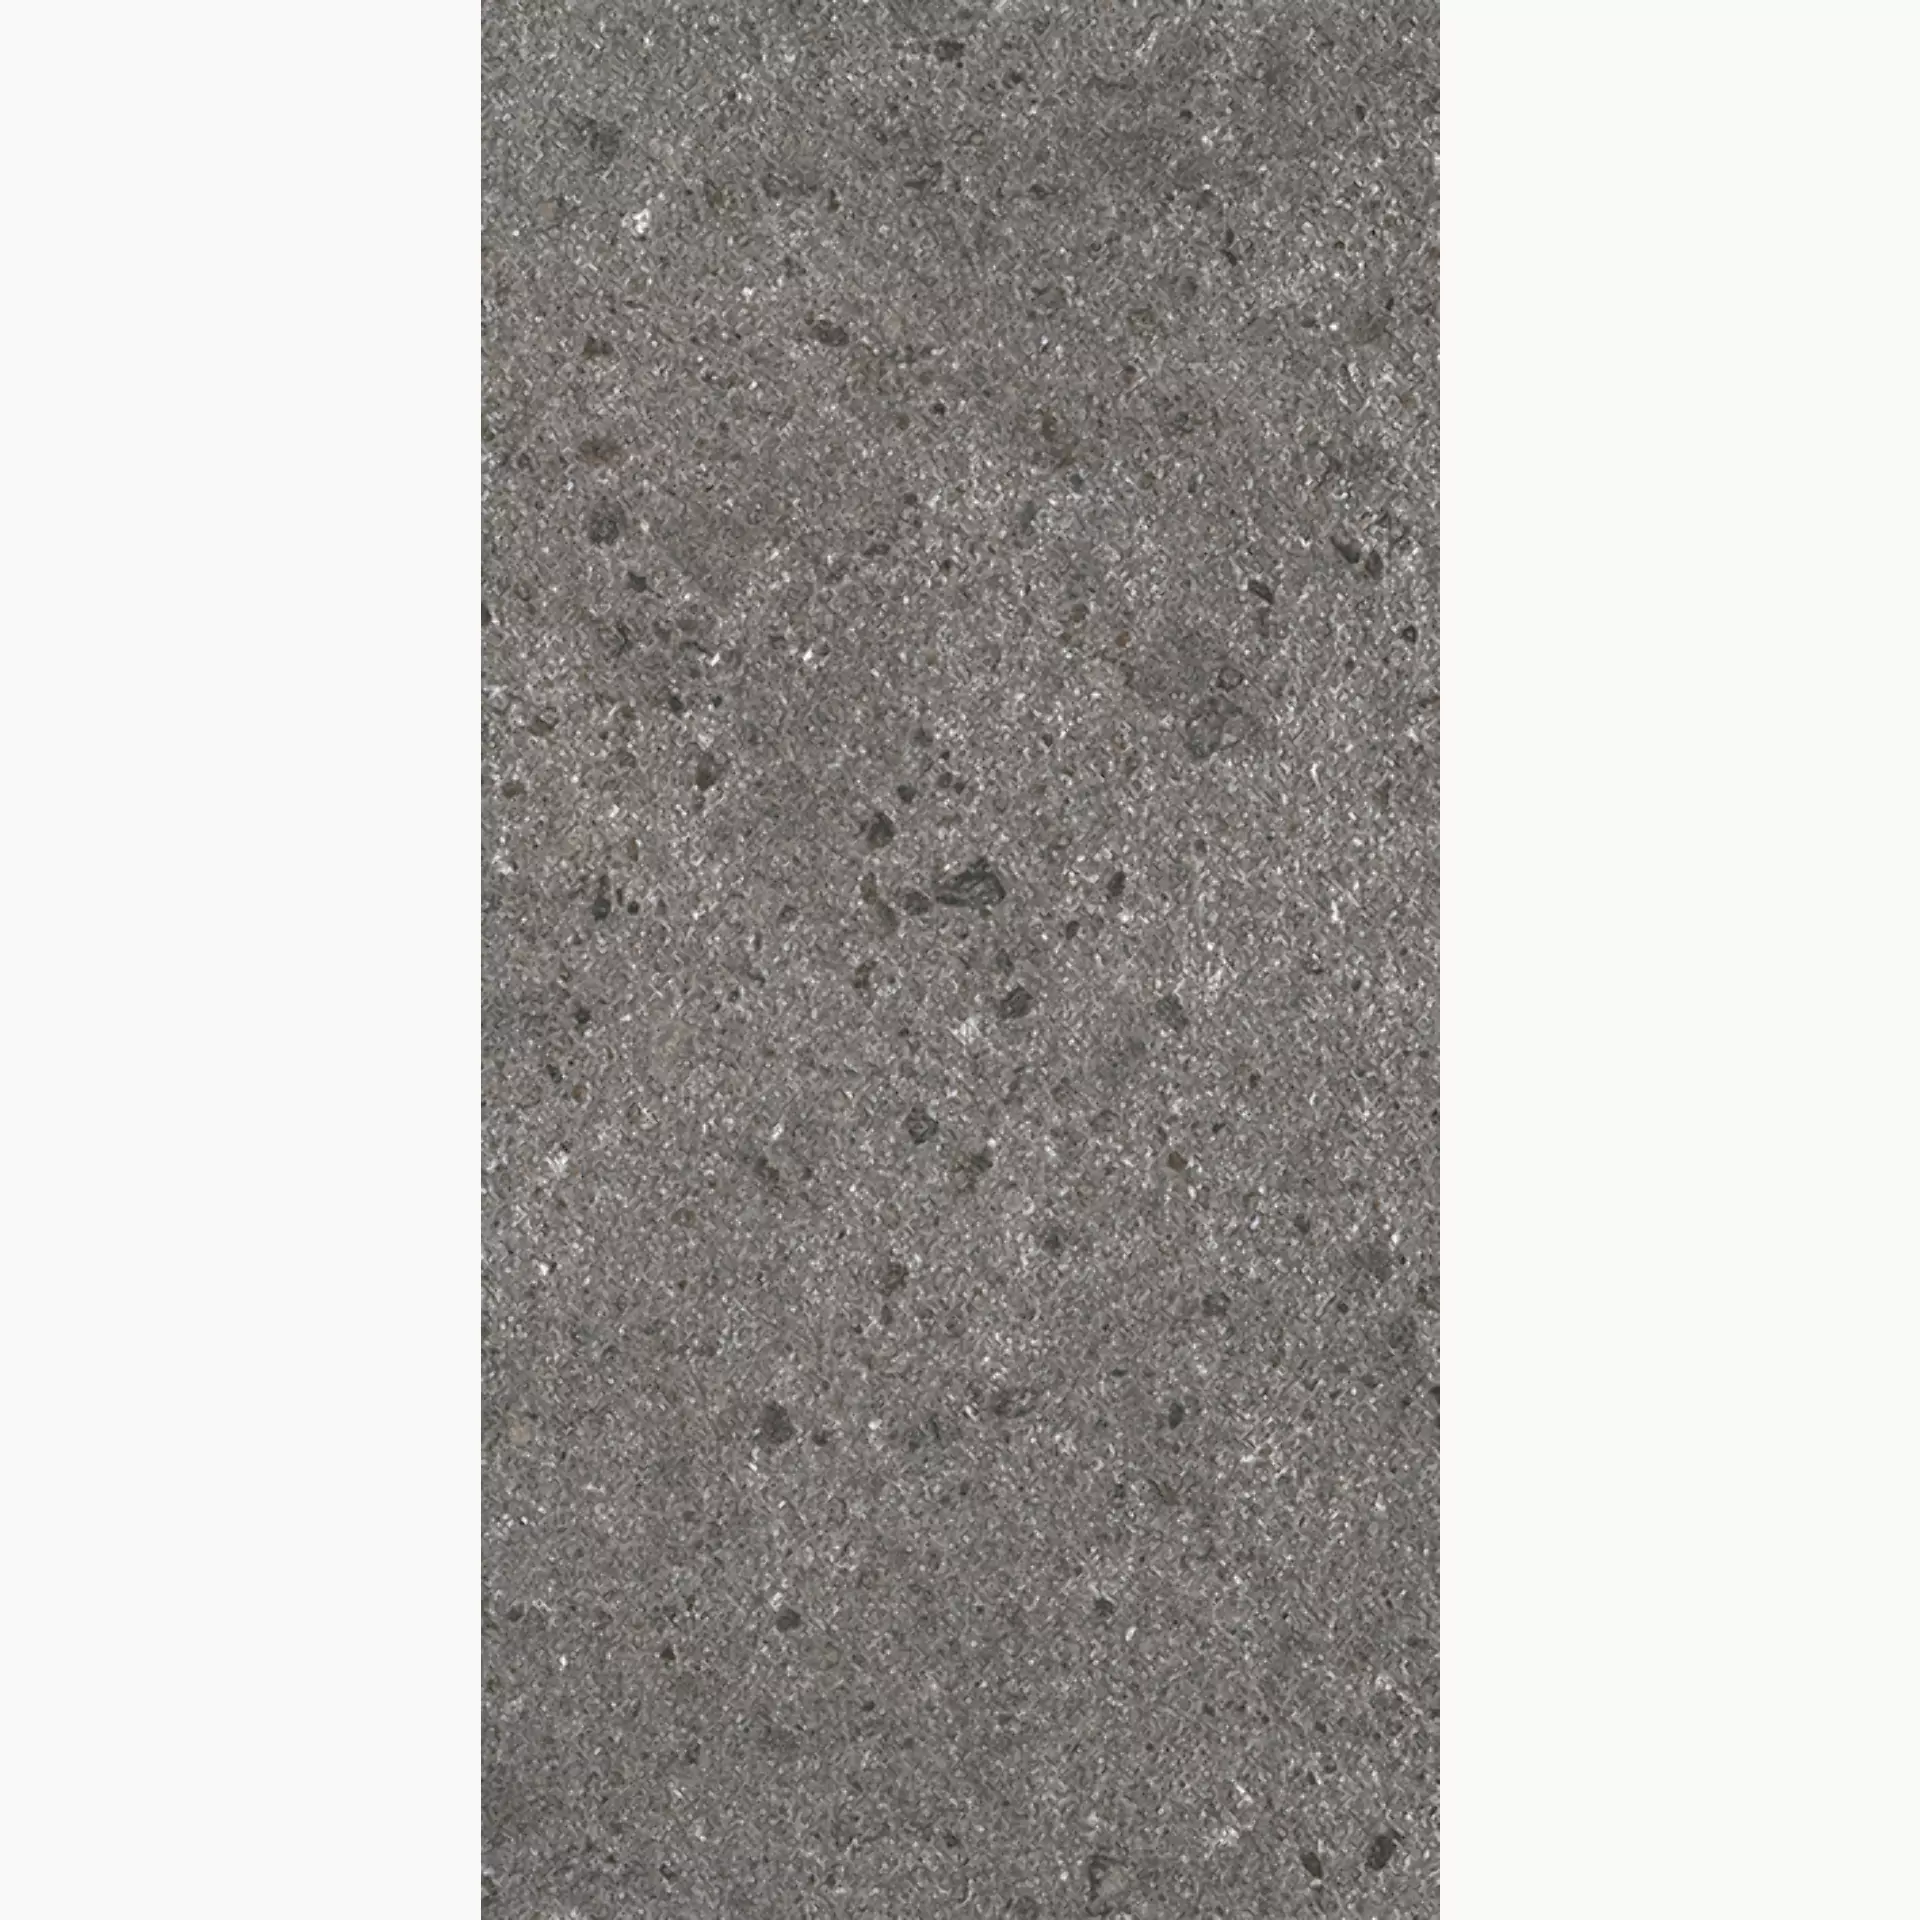 Wandfliese,Bodenfliese Villeroy & Boch Aberdeen Slate Grey Matt Slate Grey 2685-SB9M matt 30x60cm rektifiziert 10mm